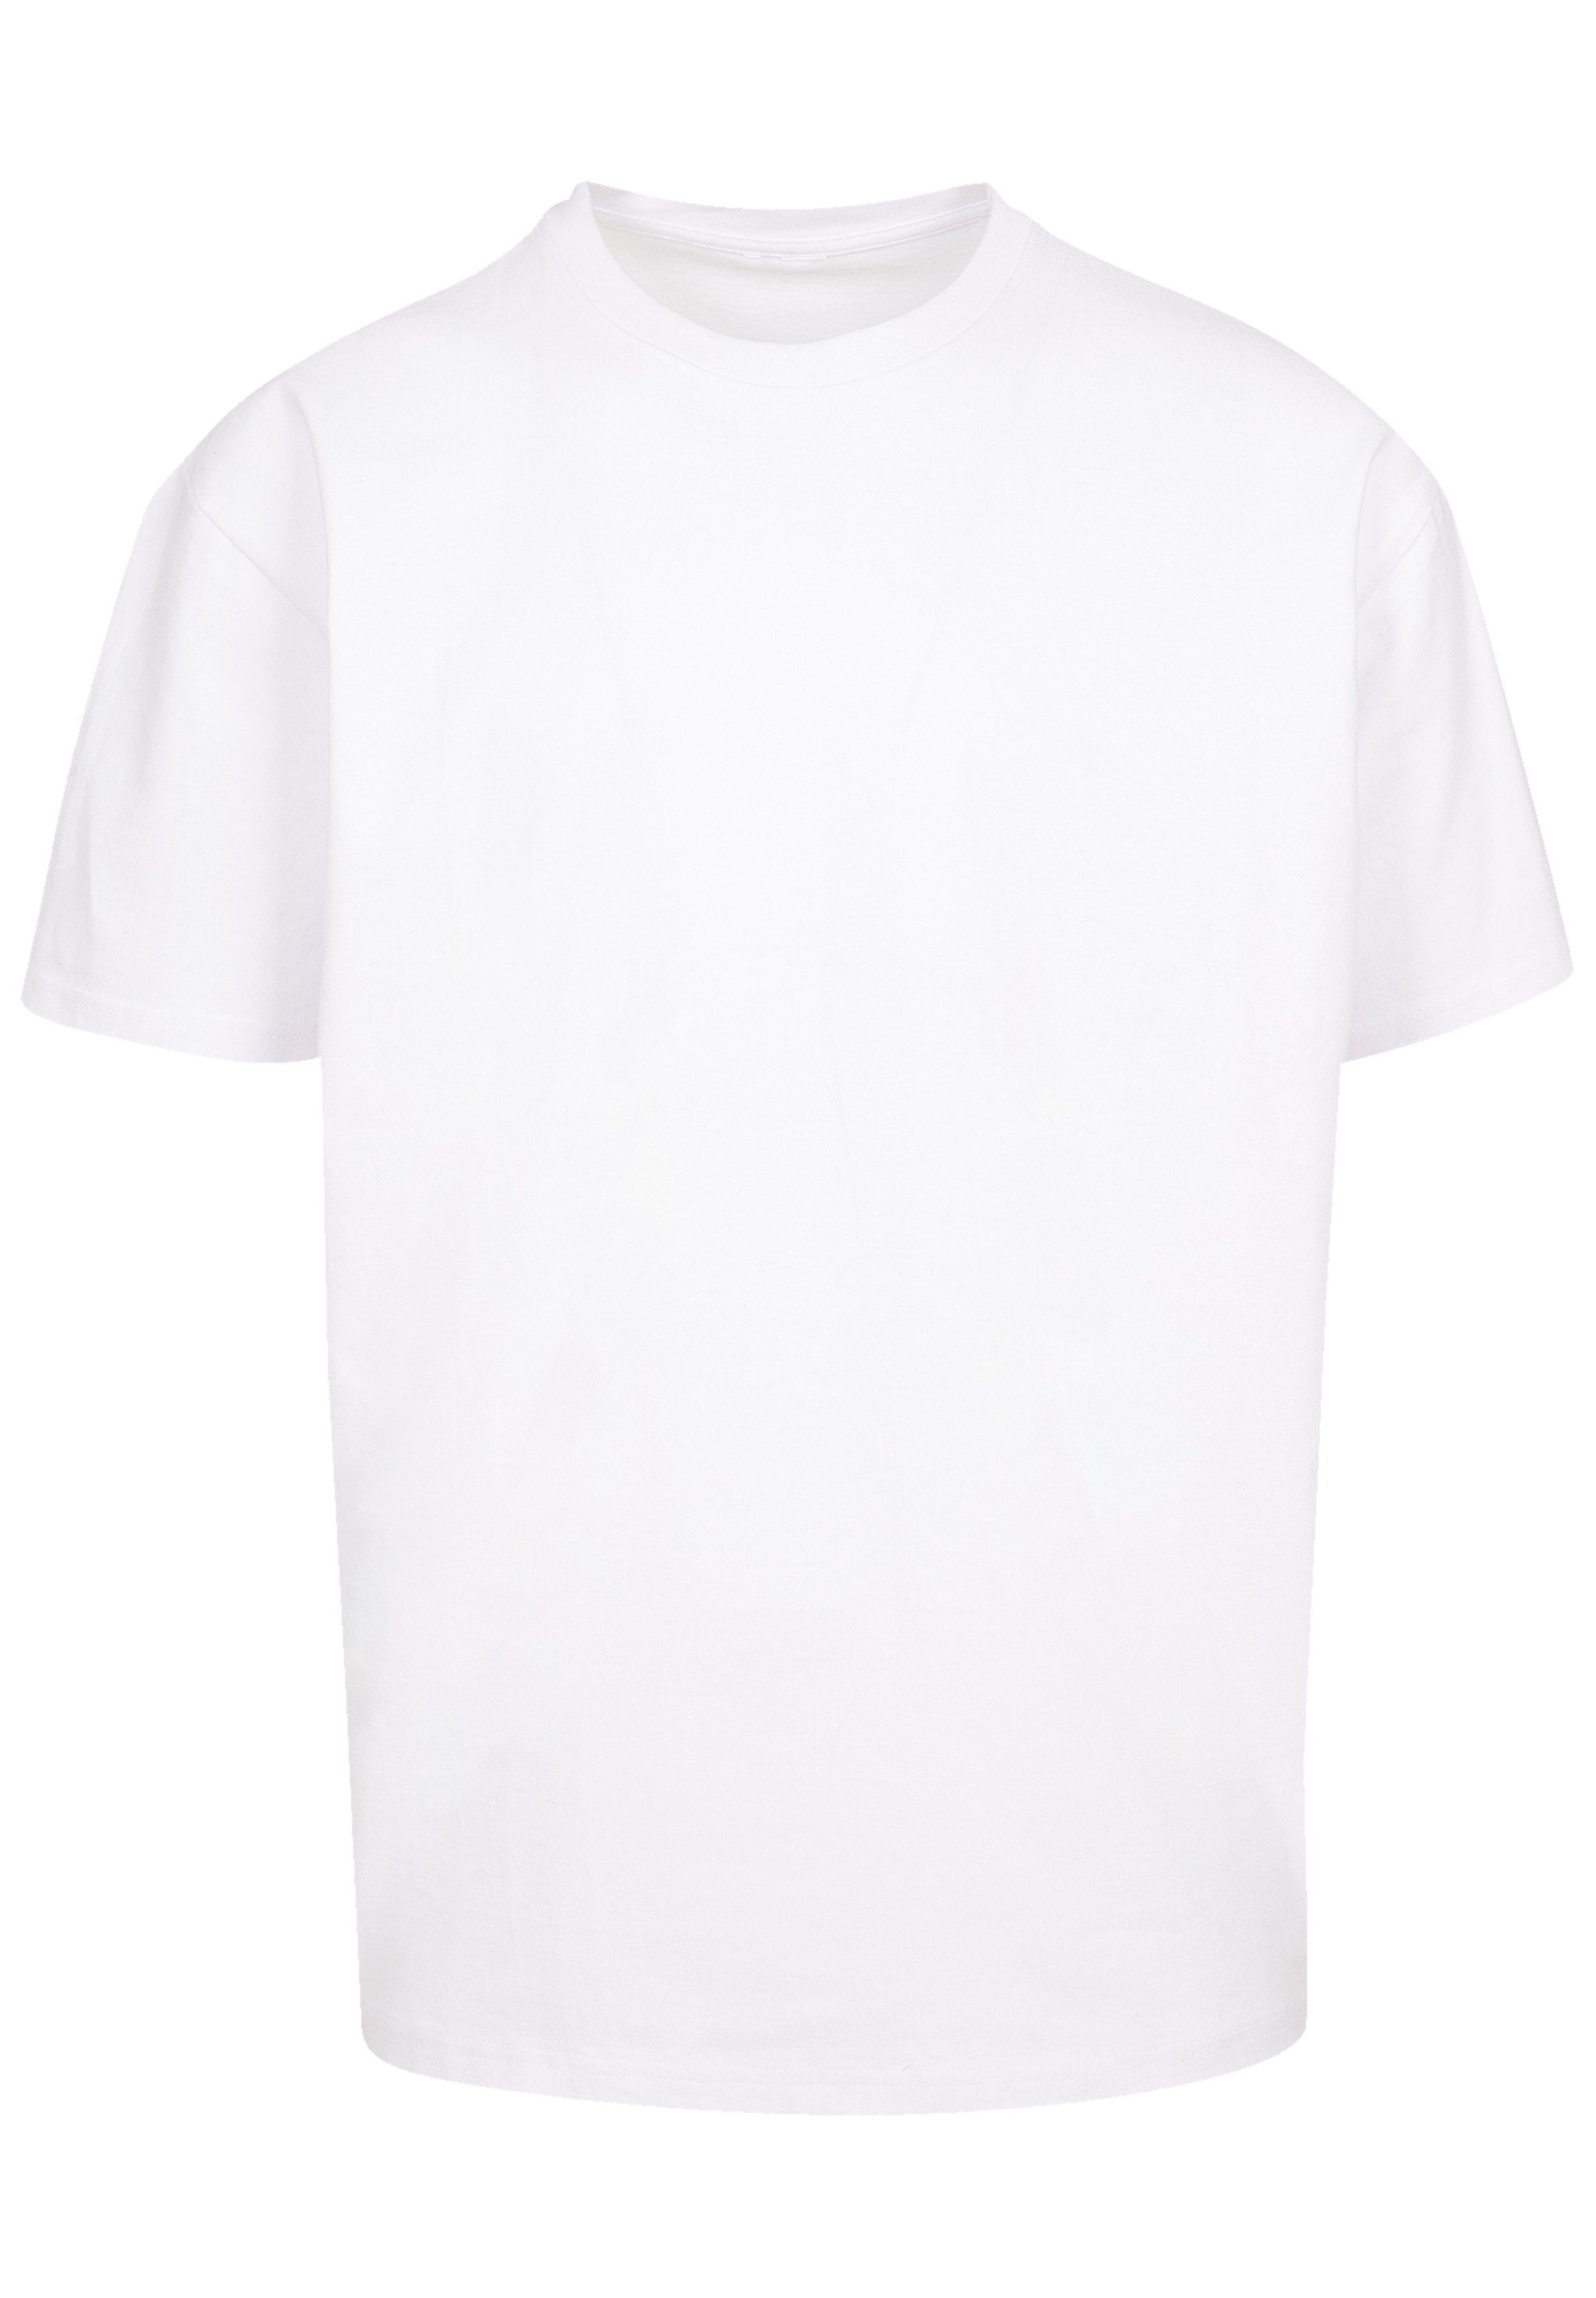 SIZE eine kleiner bitte F4NT4STIC Größe Print, bestellen PLUS weit T-Shirt aus, Fällt Welle Kanagawa